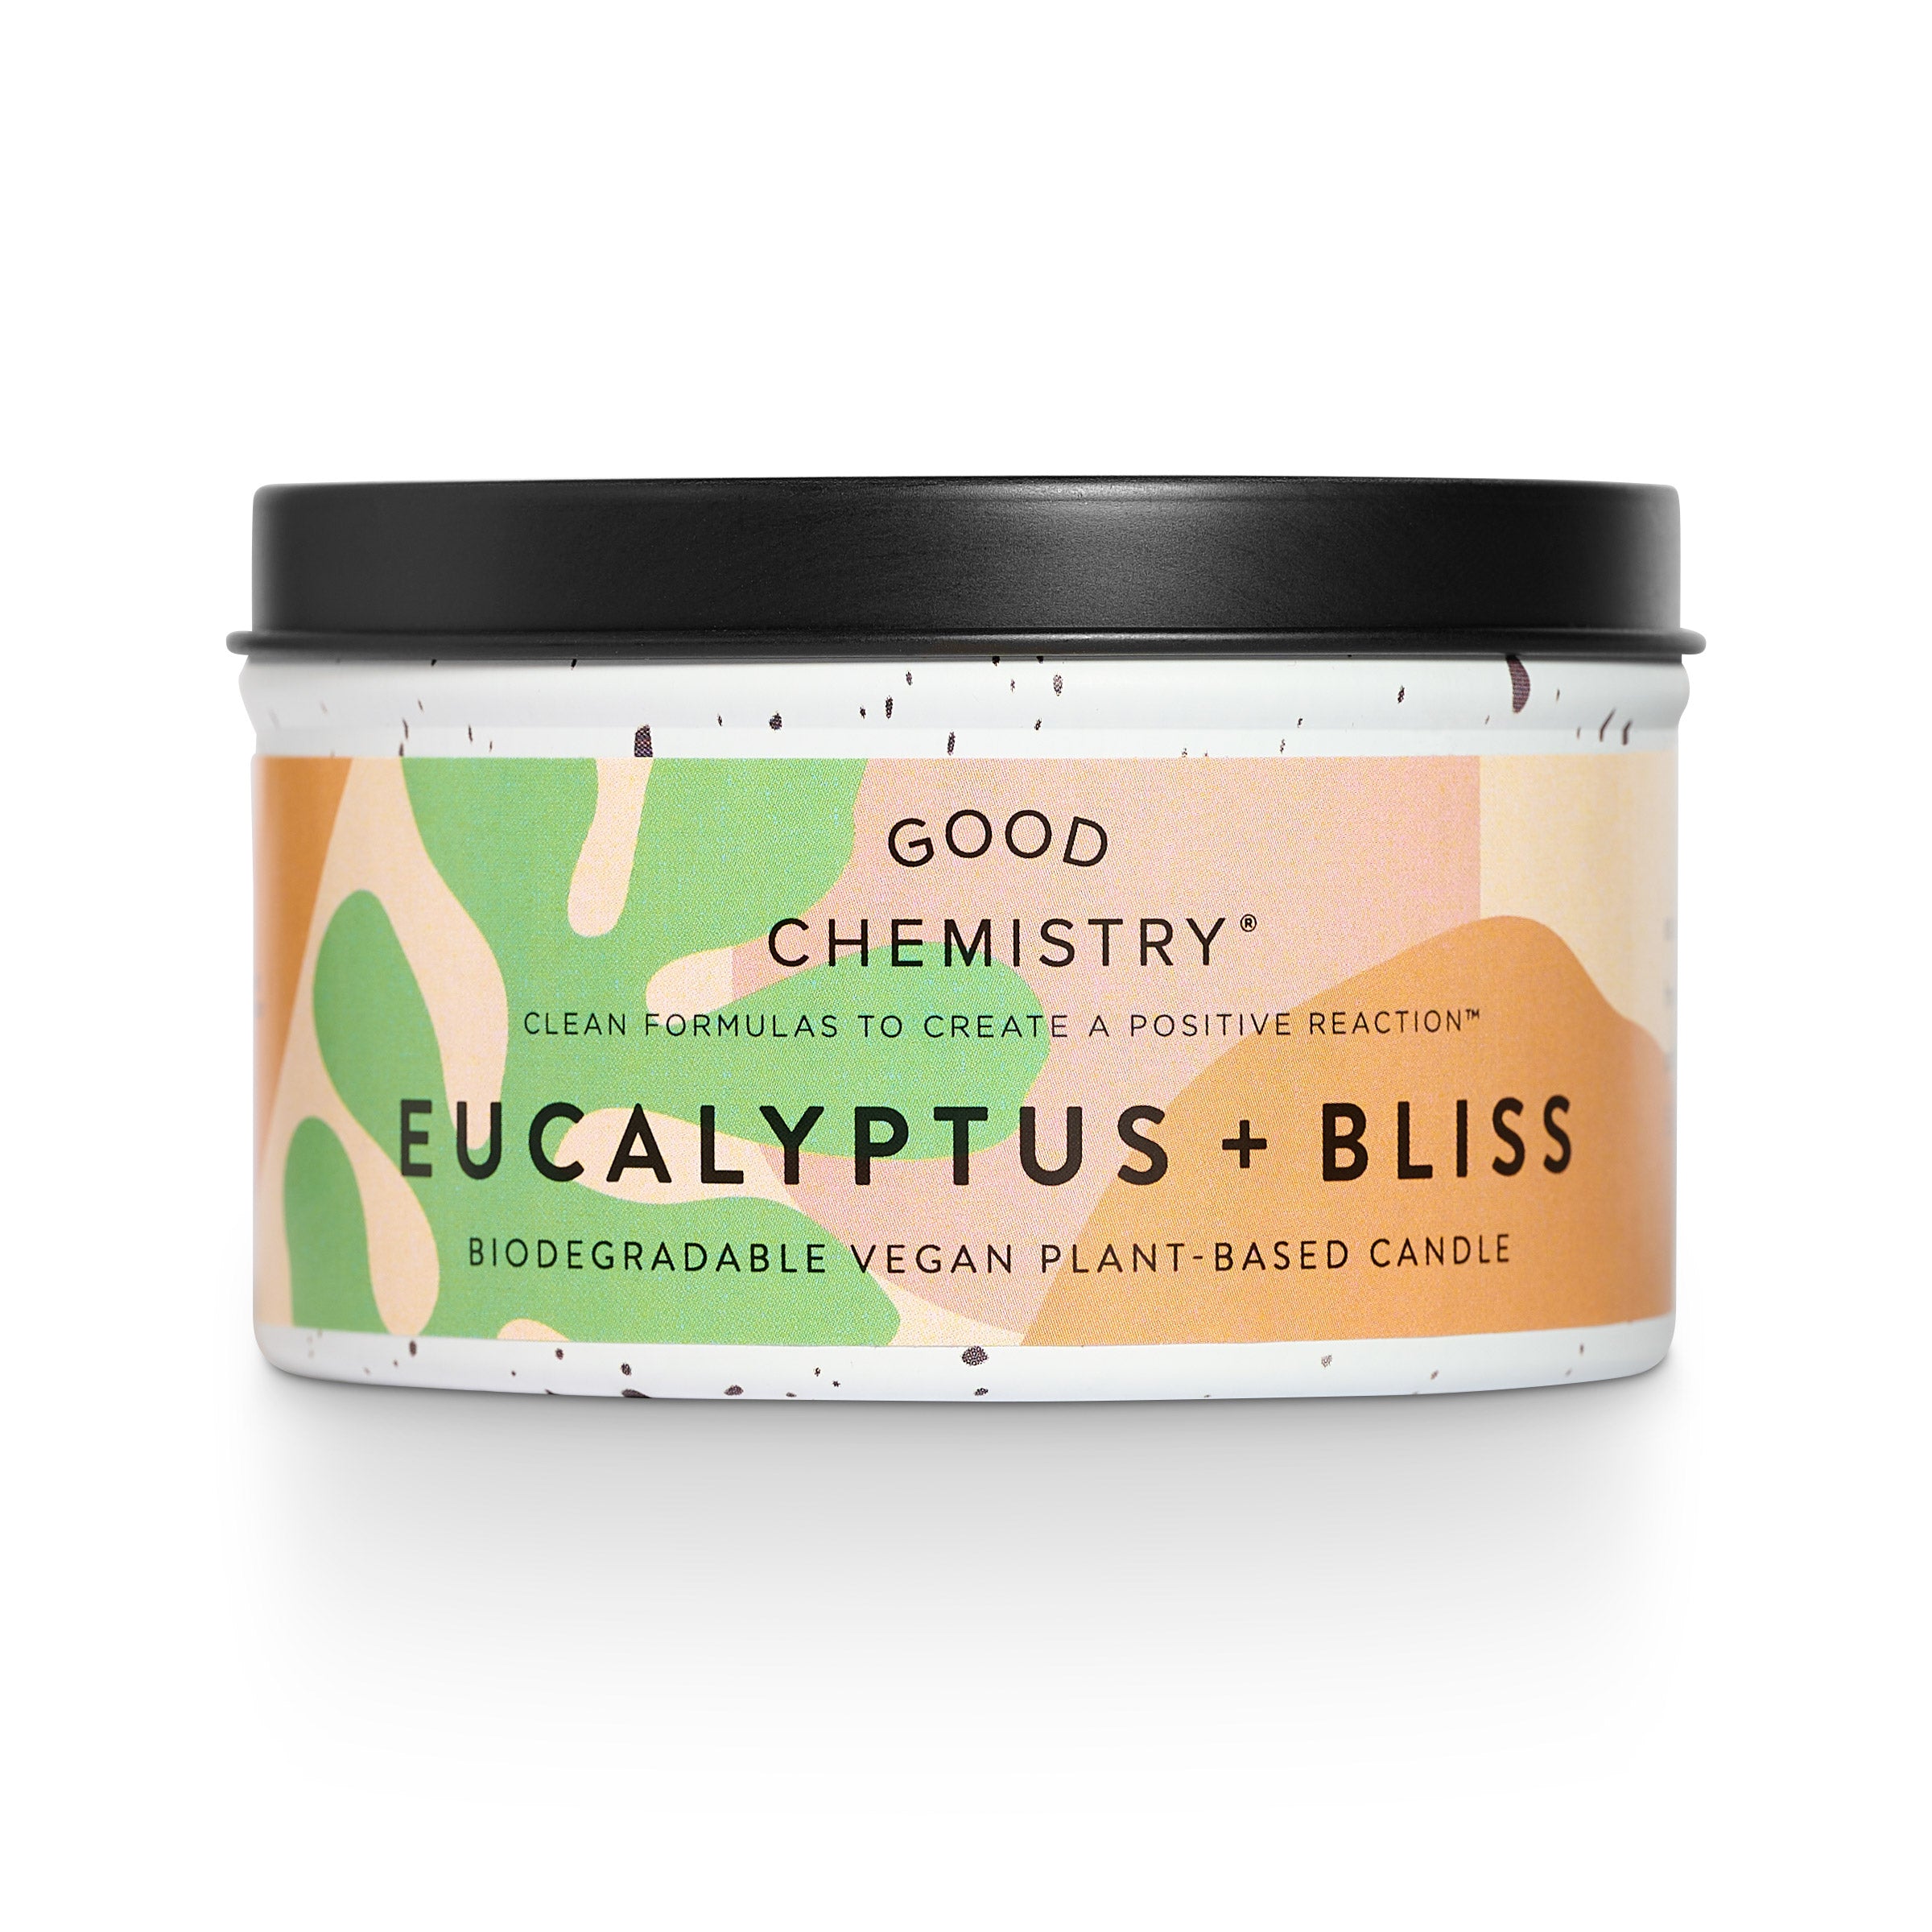 Good Chemistry Vegan Biodegradable Eucalyptus Bliss Candle Refill Kit